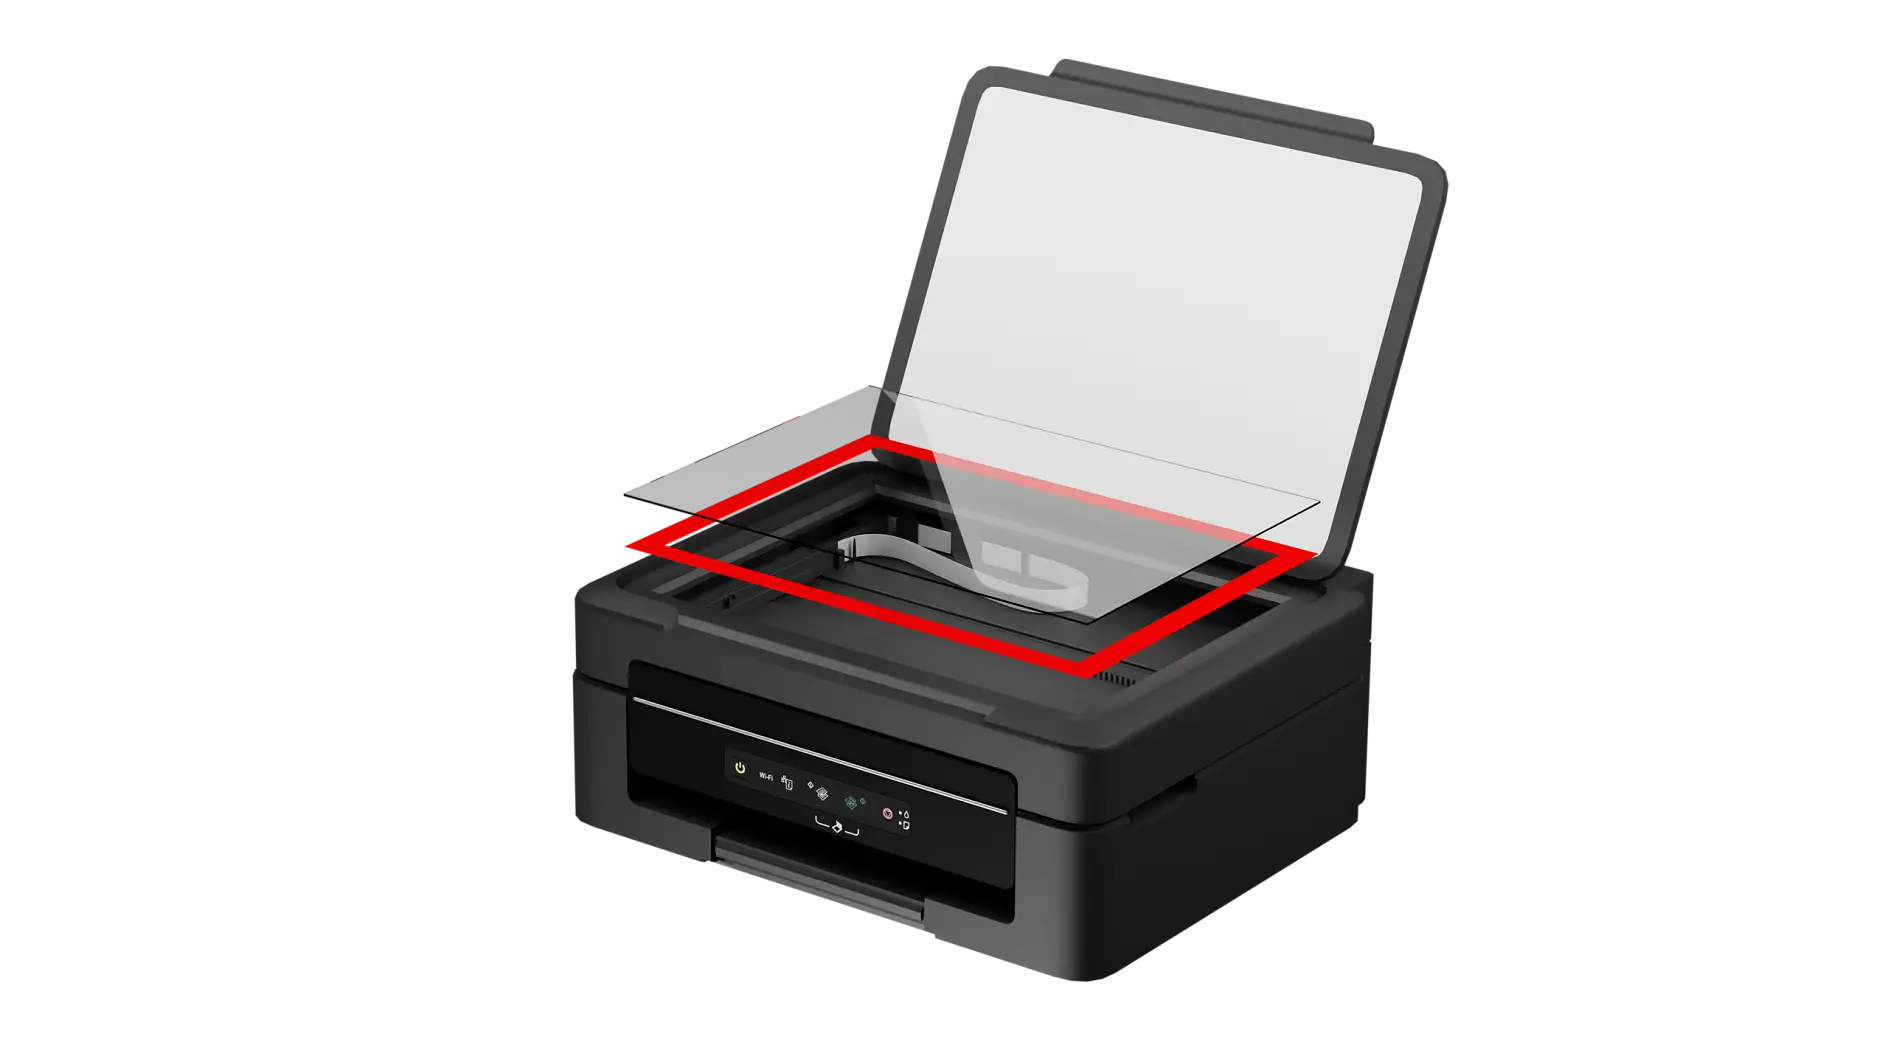 De glasplaat van een scanner wordt met dubbelzijdige tape op het frame van de printer gemonteerd.